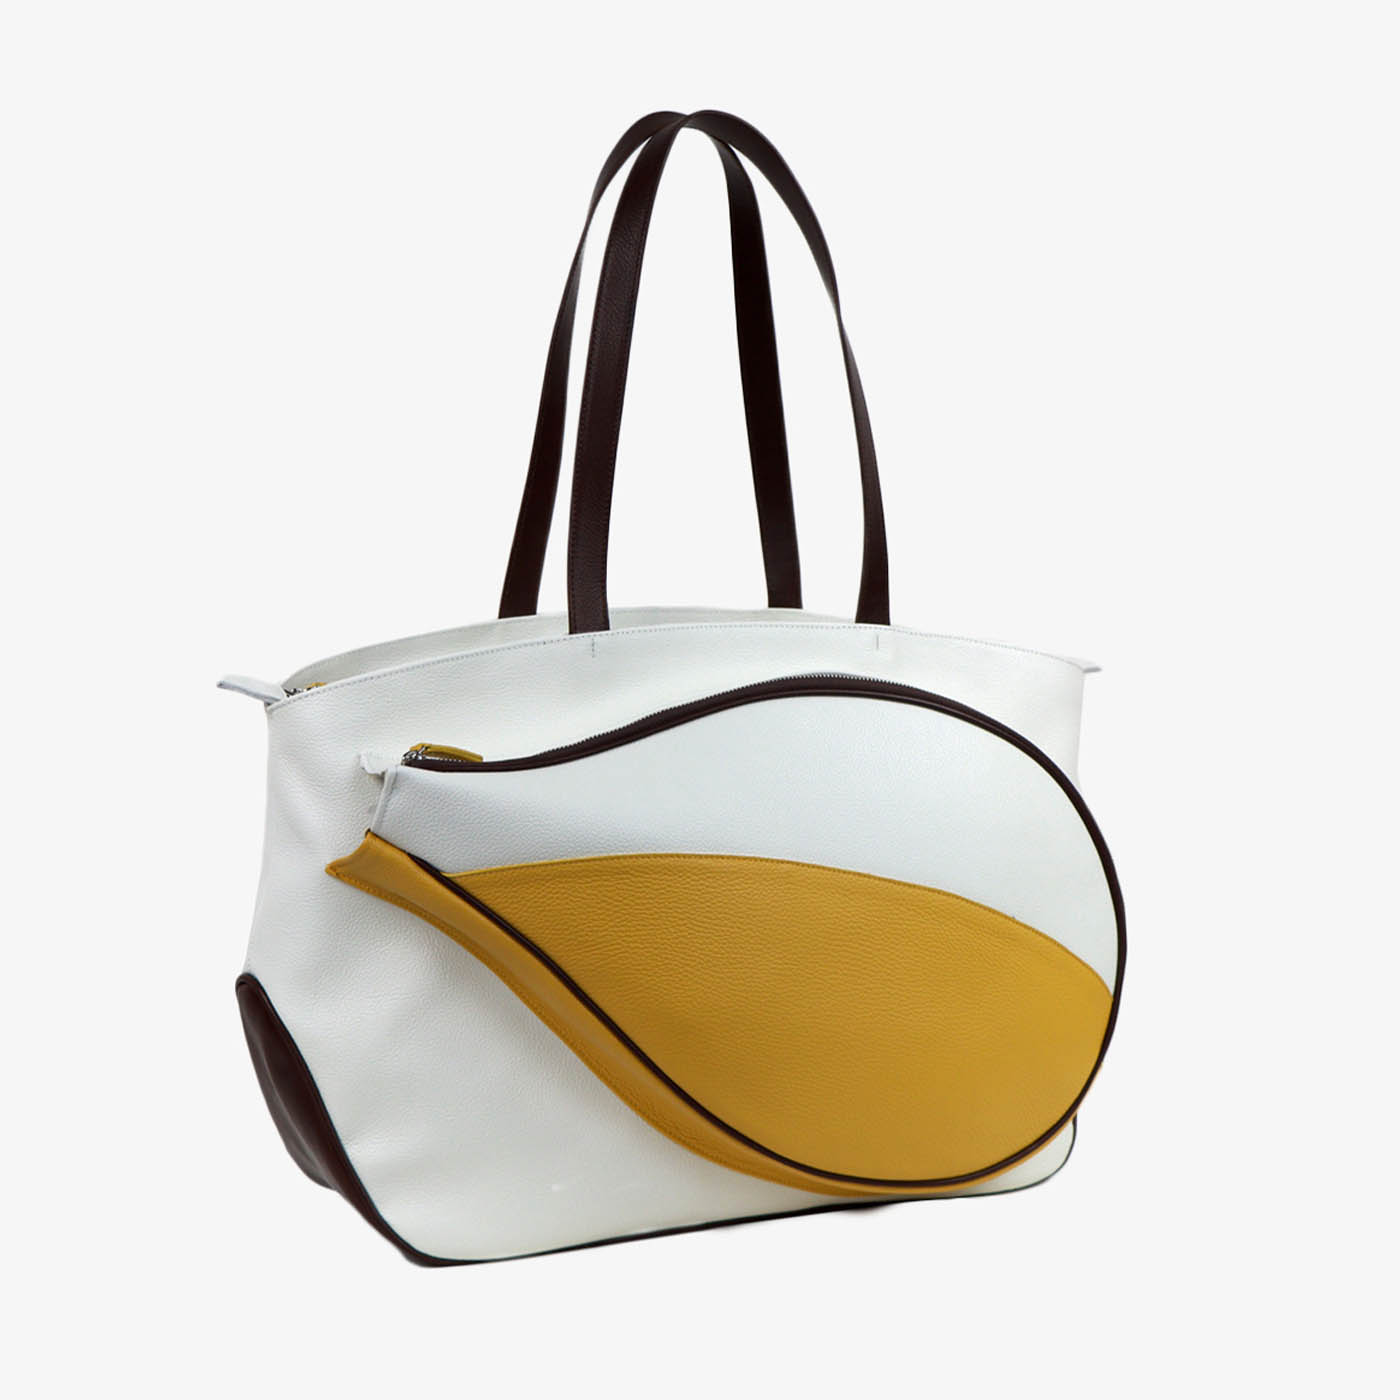 Bolsa de deporte blanca/amarilla/marrón con bolsillo en forma de raqueta de tenis - Vista alternativa 1